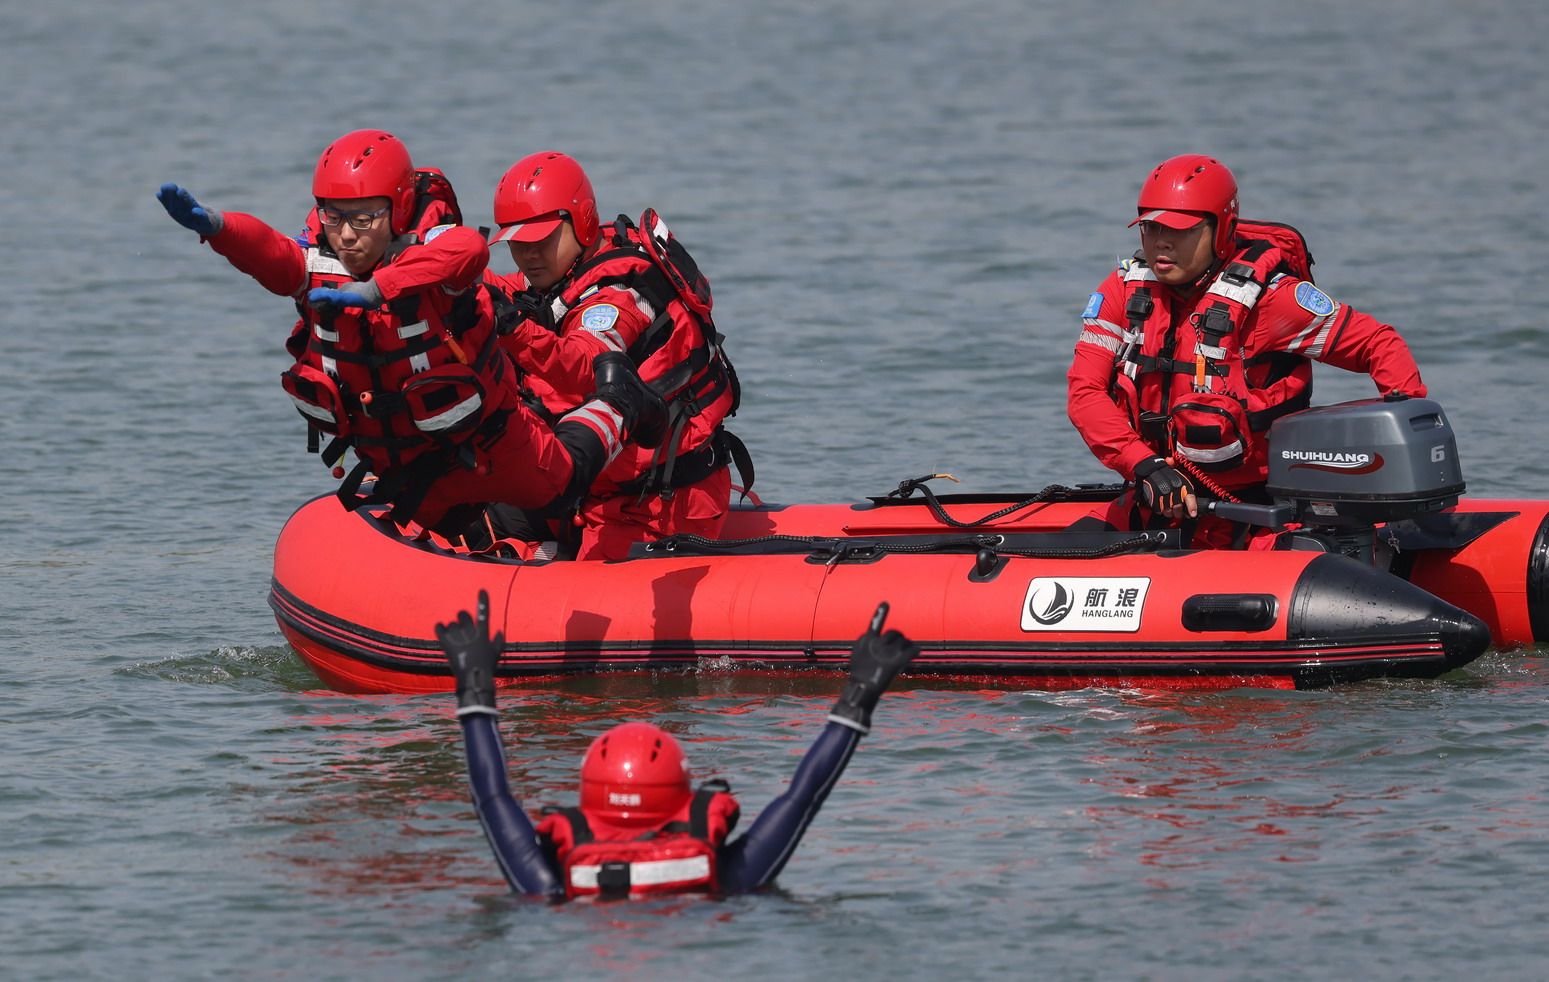 「衝鋒舟活餌救援」項目演練中，救援隊員奮力跳入水中，幫助落水者脫離危險區域。新京報記者 李木易 攝